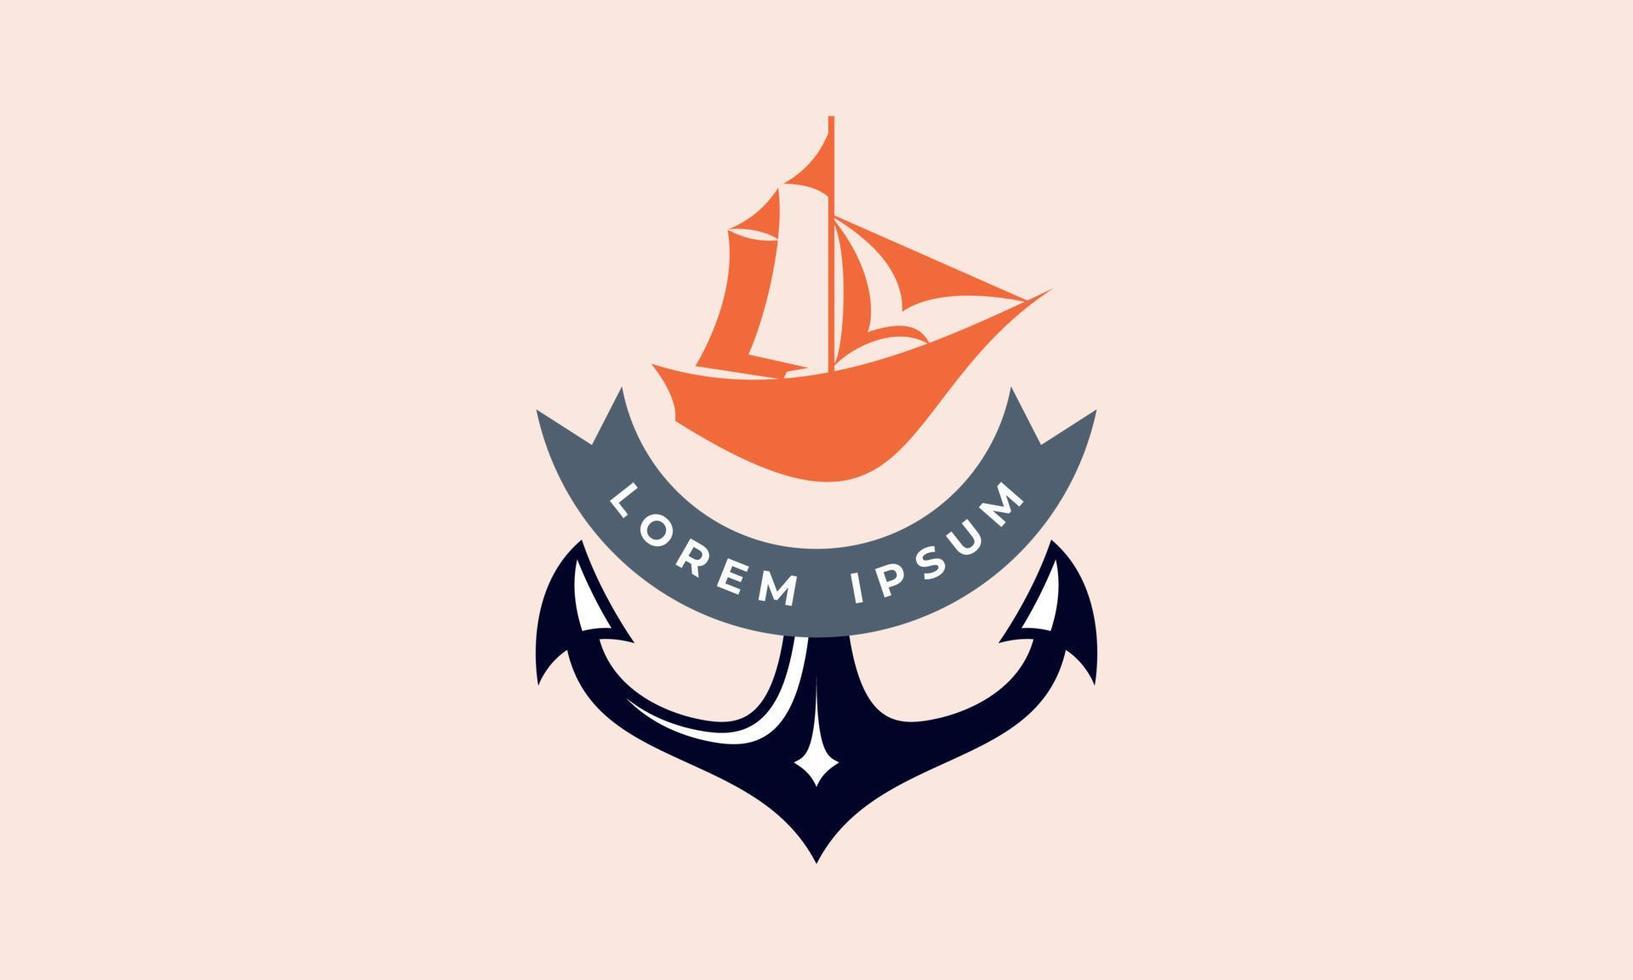 Abenteuerboot, Segelboot und Bootsfahrt-Logo-Design-Vektor-Vorlage vektor